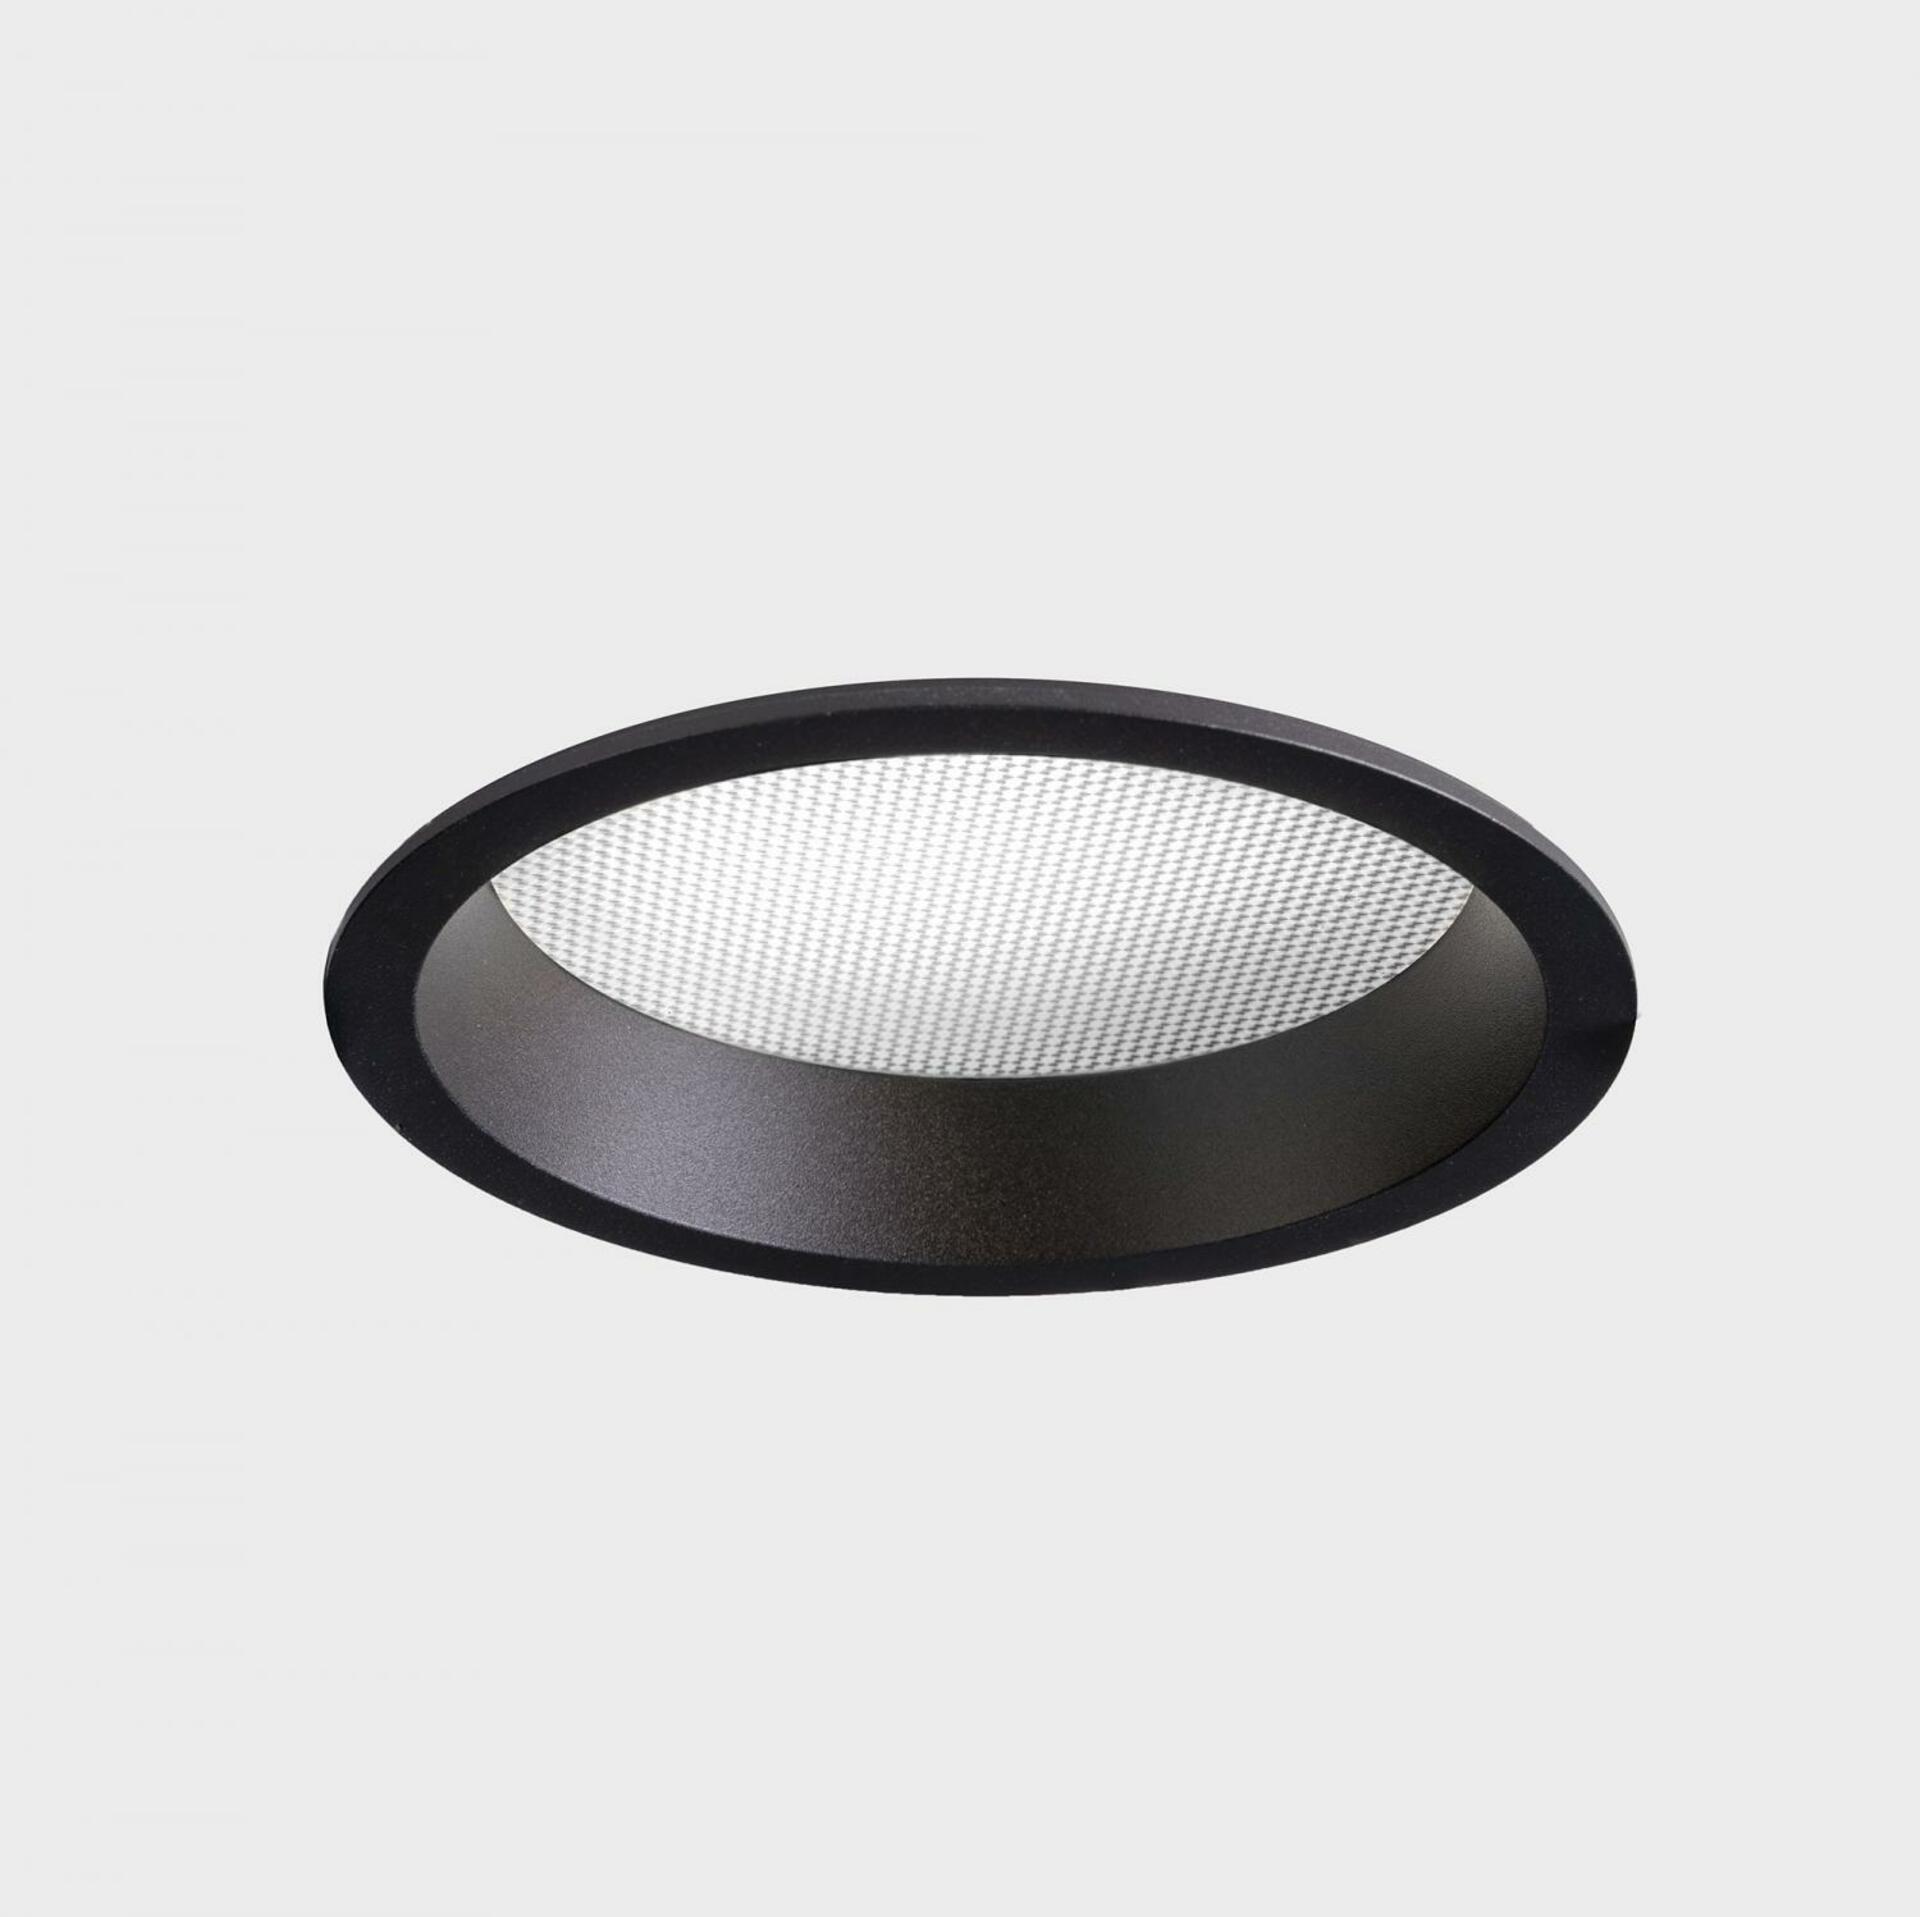 KOHL LIGHTING KOHL-Lighting LIM zapuštěné svítidlo s rámečkem pr. 136 mm černá 12 W CRI 80 3000K DALI